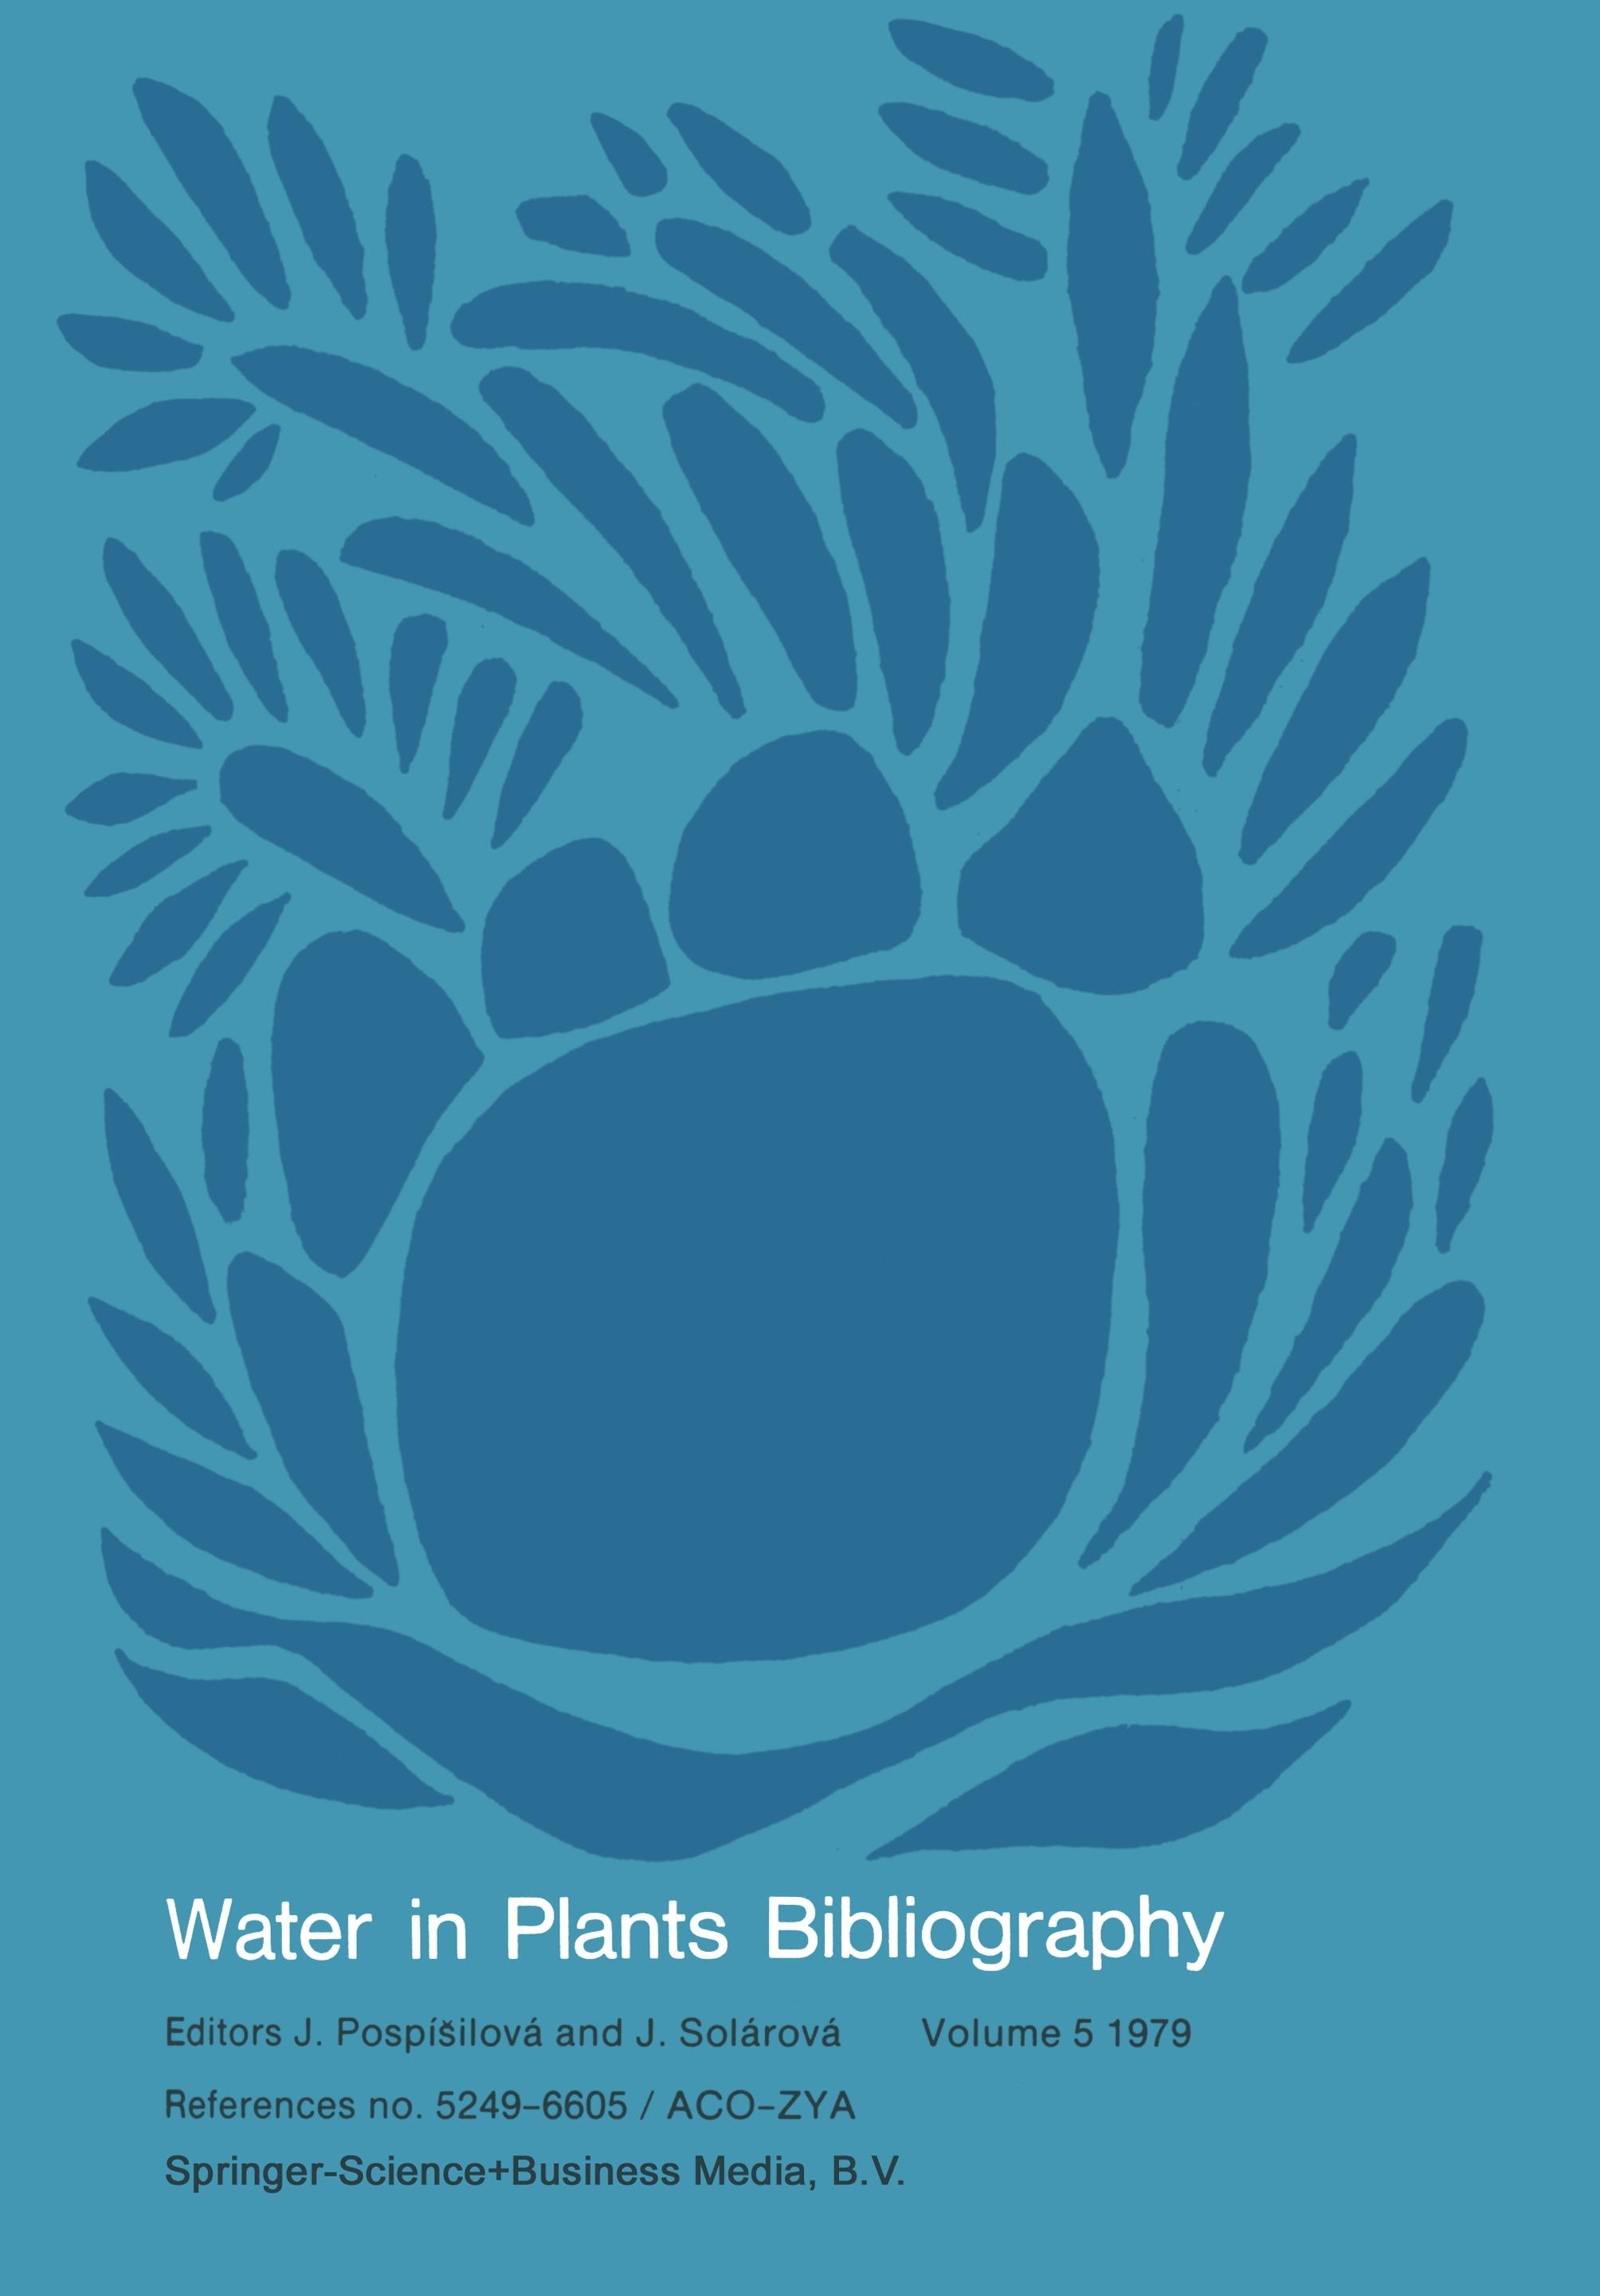 Water-in-Plants Bibliography, volume 5 1979 - Pospísilová, J.|Solárová, J.